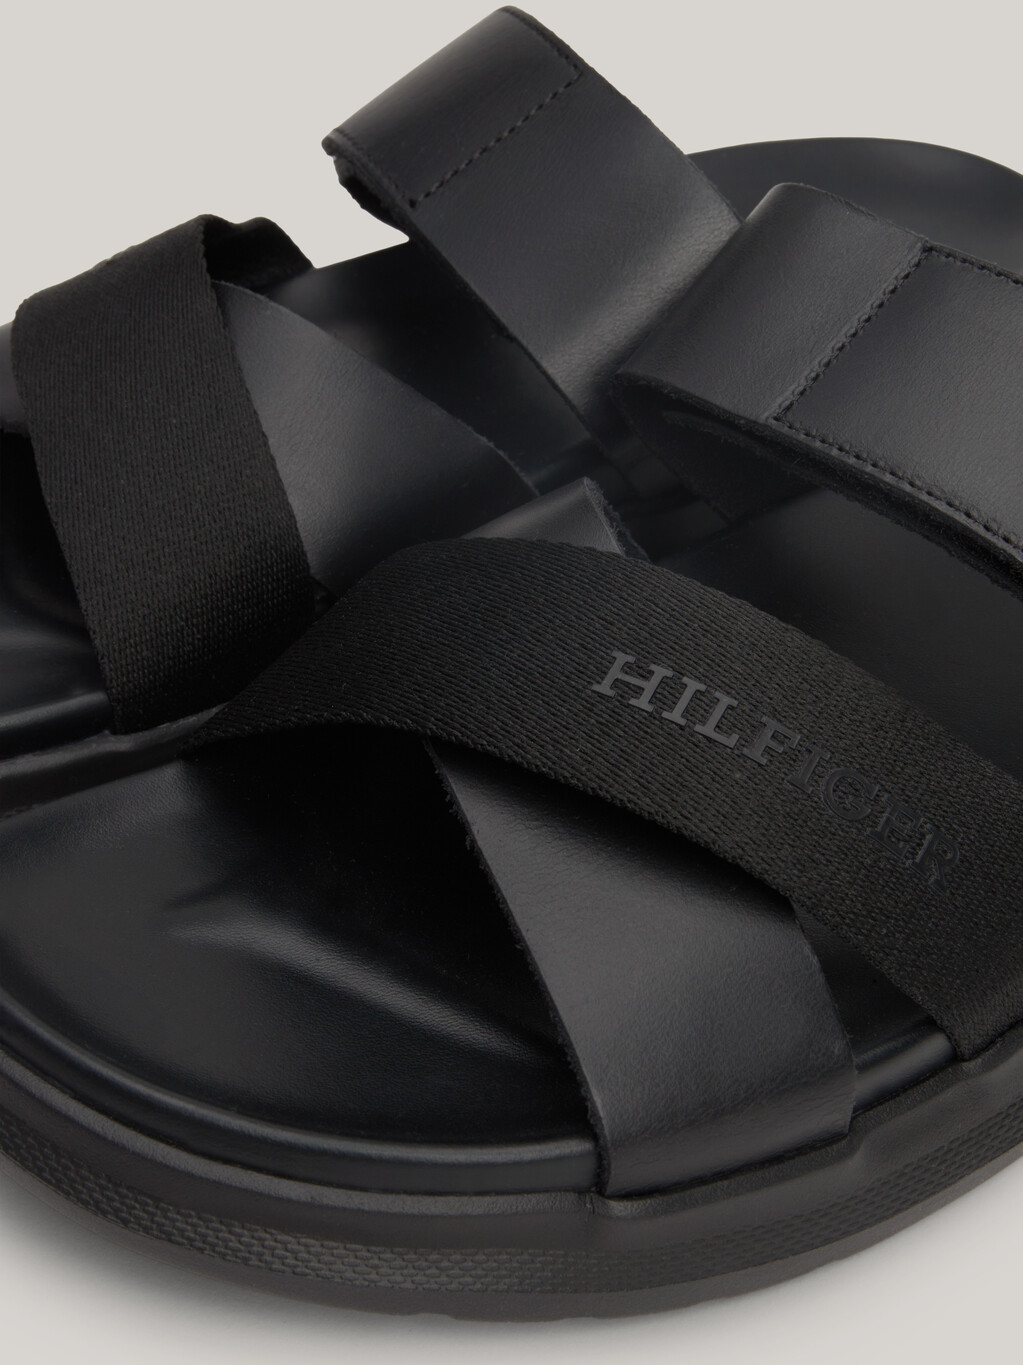 Crossover Strap Leather Sandals, Black, hi-res